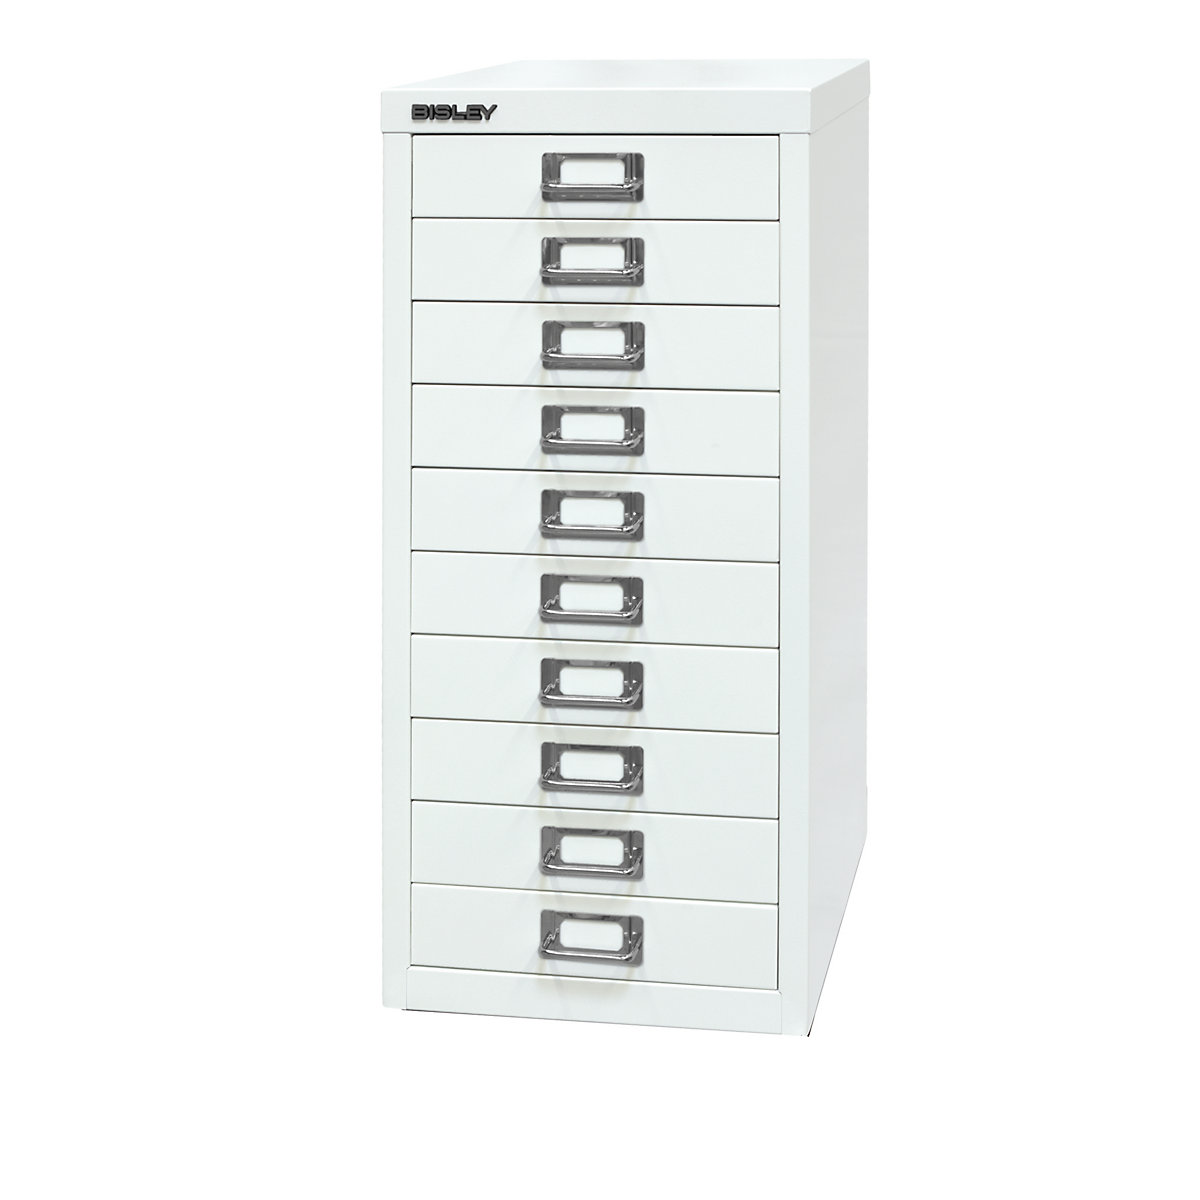 MultiDrawer™ 29 series – BISLEY, A4, 10 drawers, traffic white-2